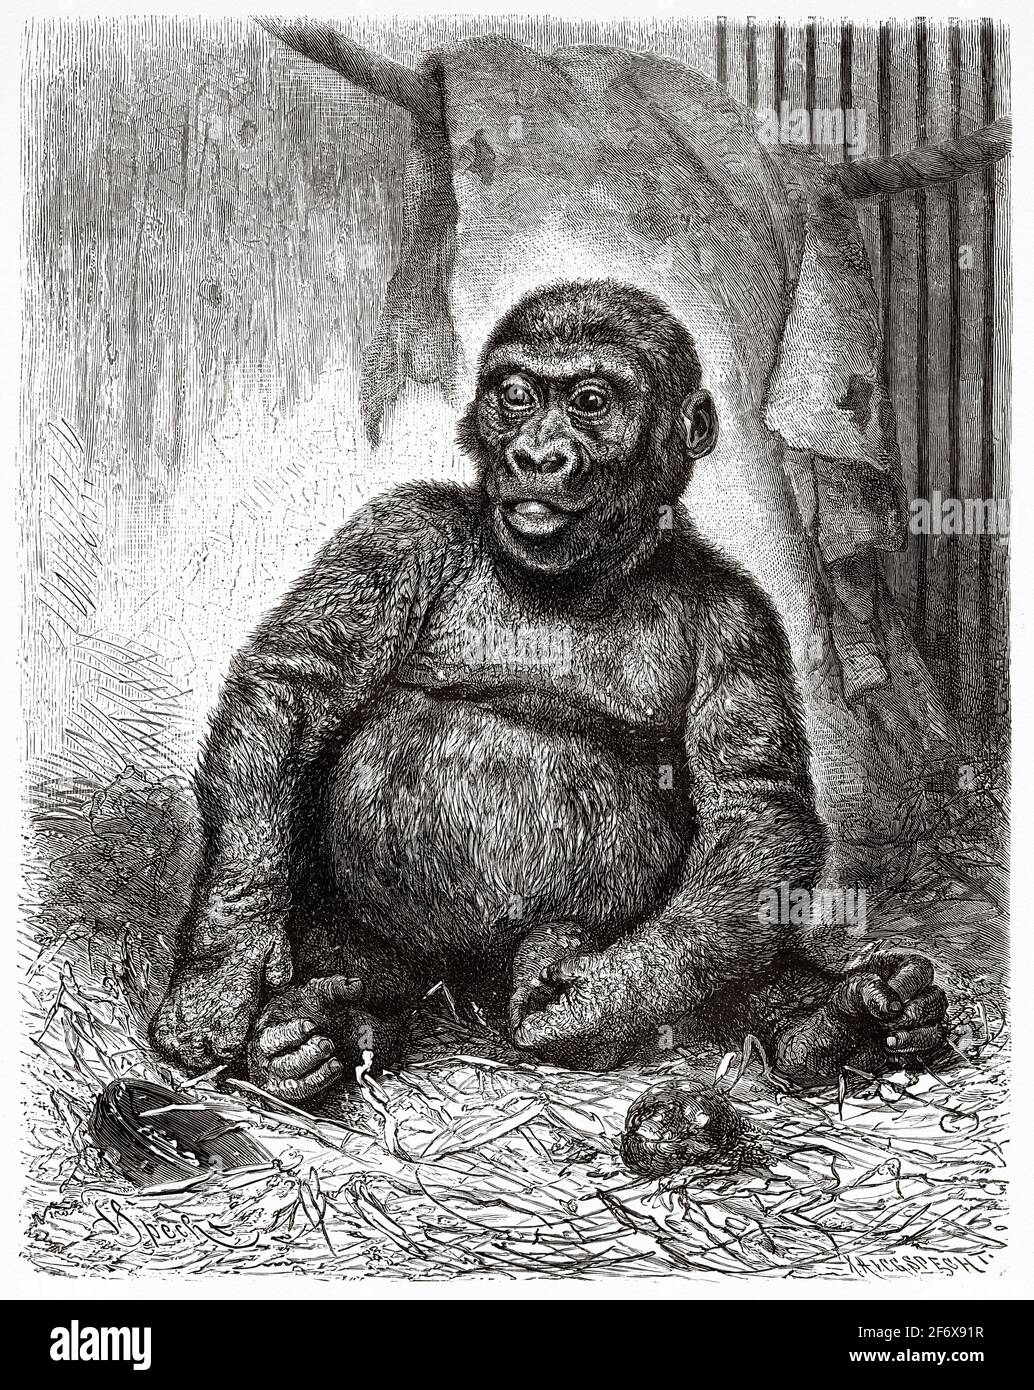 Gorille troglodytes dans un zoo du XIX siècle. Ancienne illustration gravée du XIXe siècle d'El Mundo Ilustrado 1879 Banque D'Images